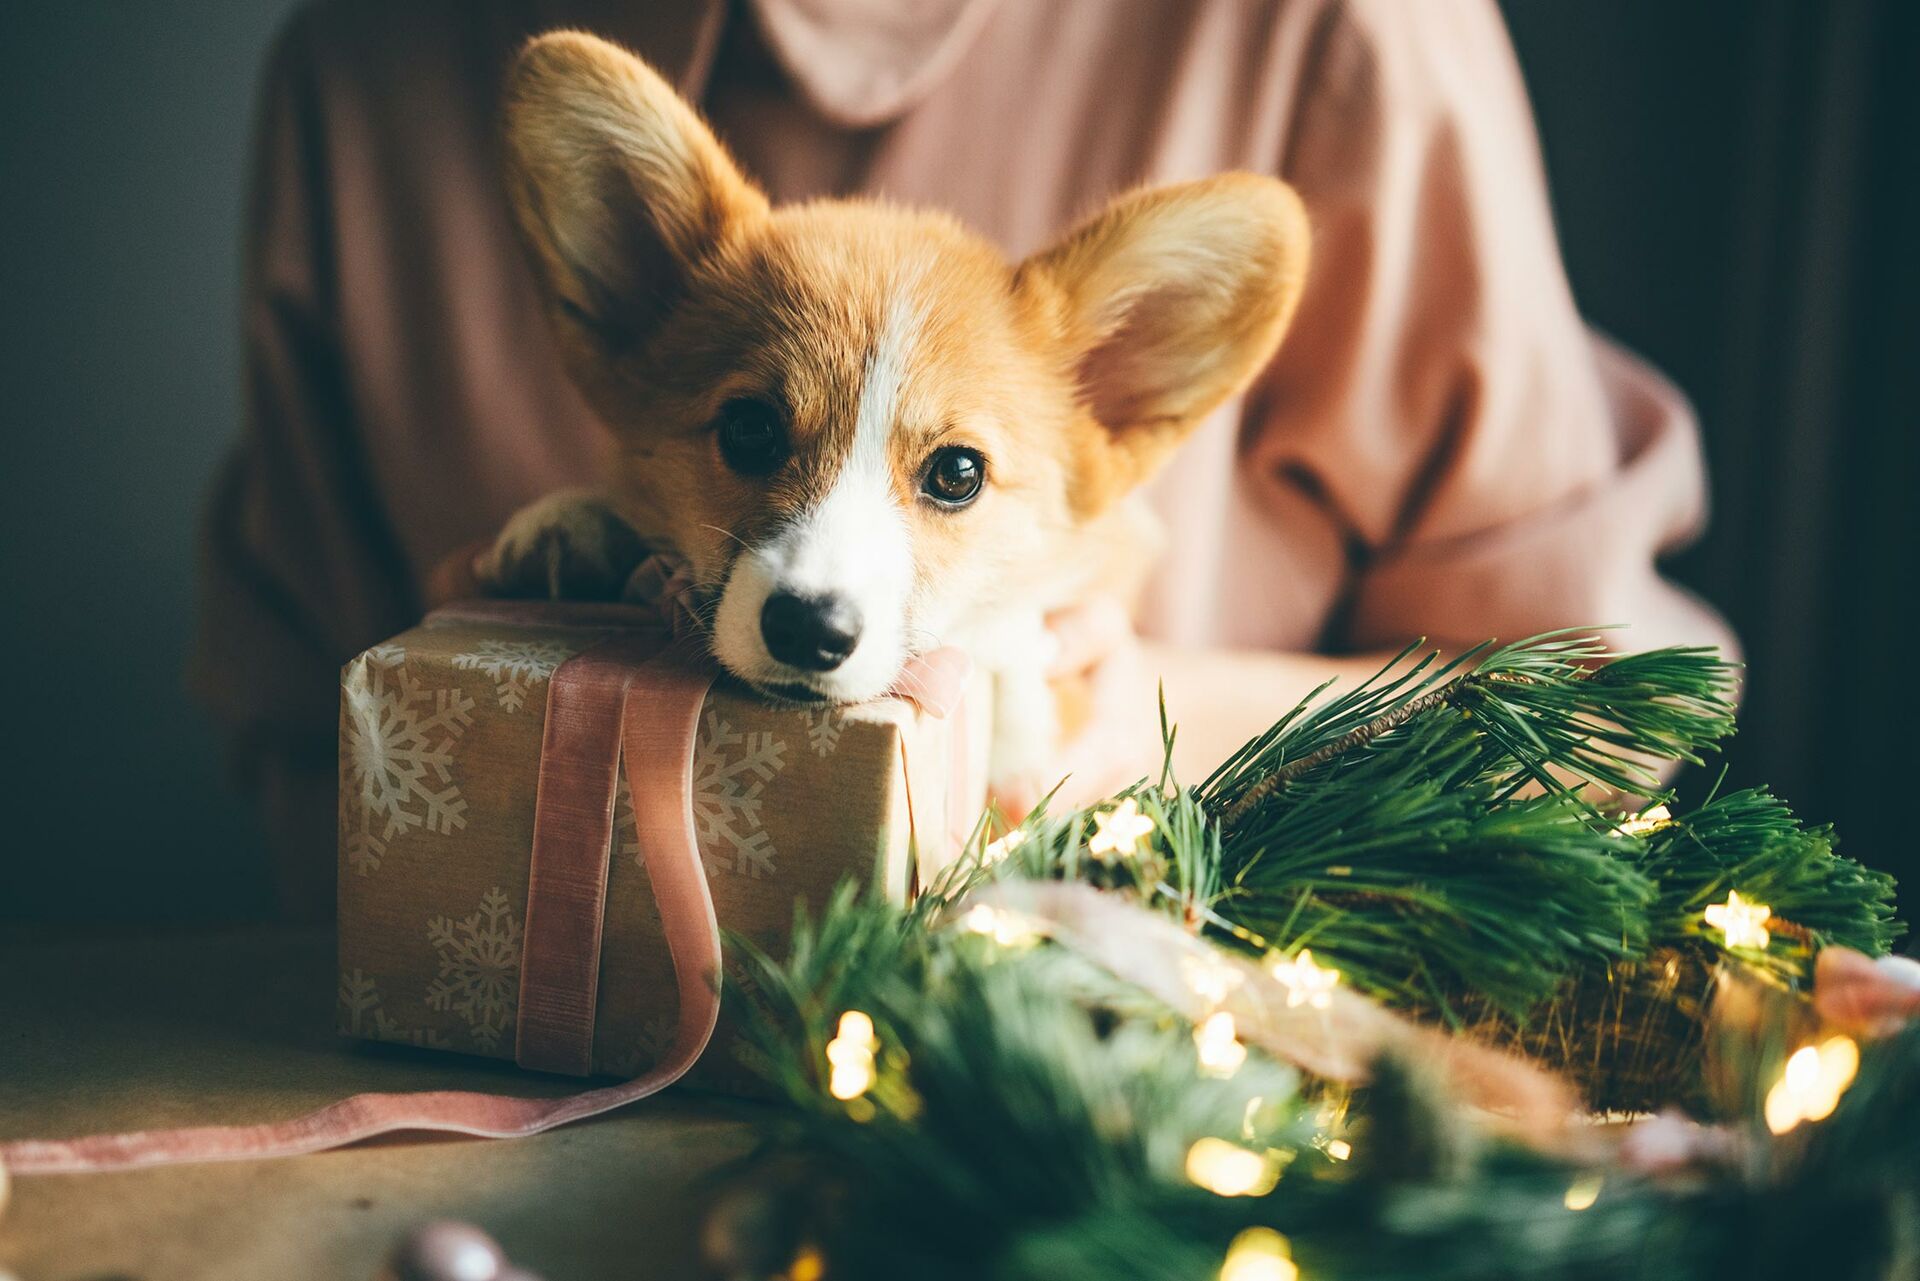 Hund legt den Kopf auf einem Geschenk ab.